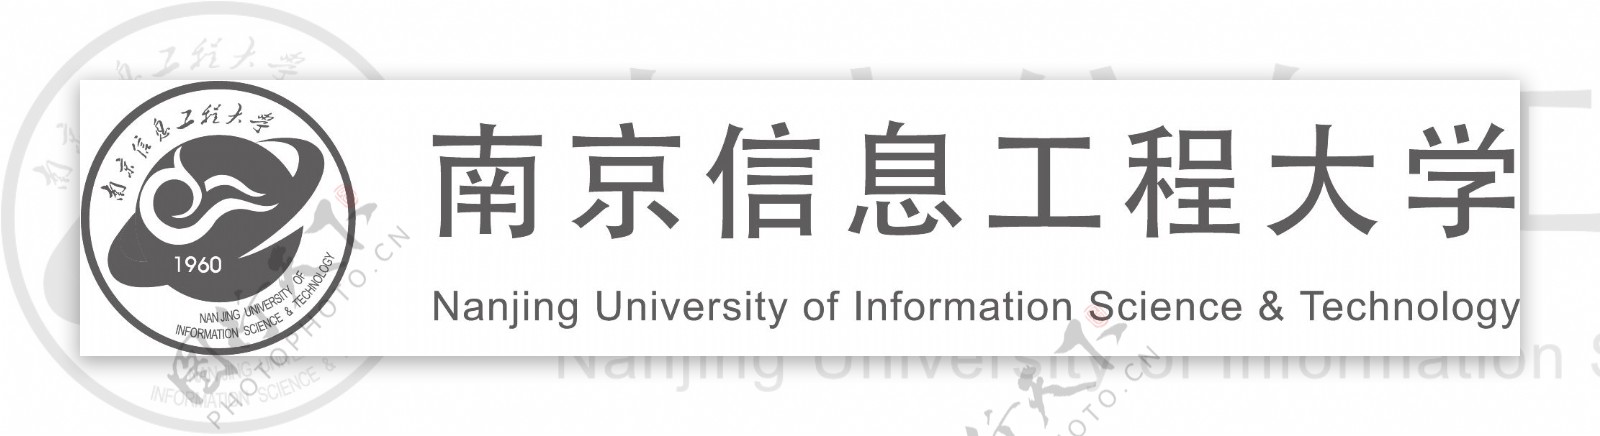 南京信息工程大学标志图片